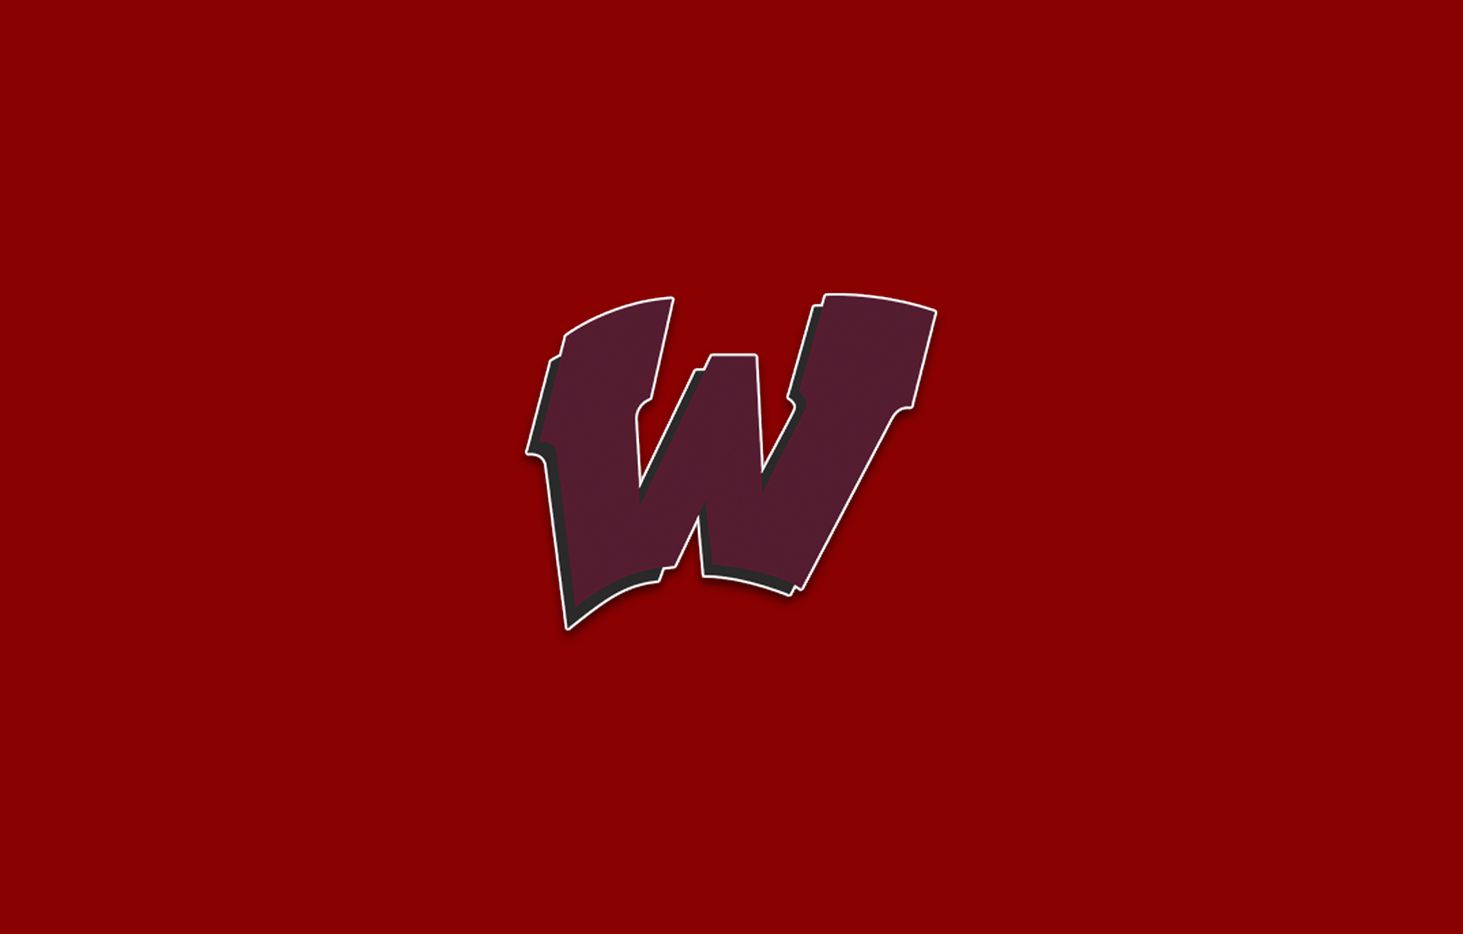 Wylie logo.